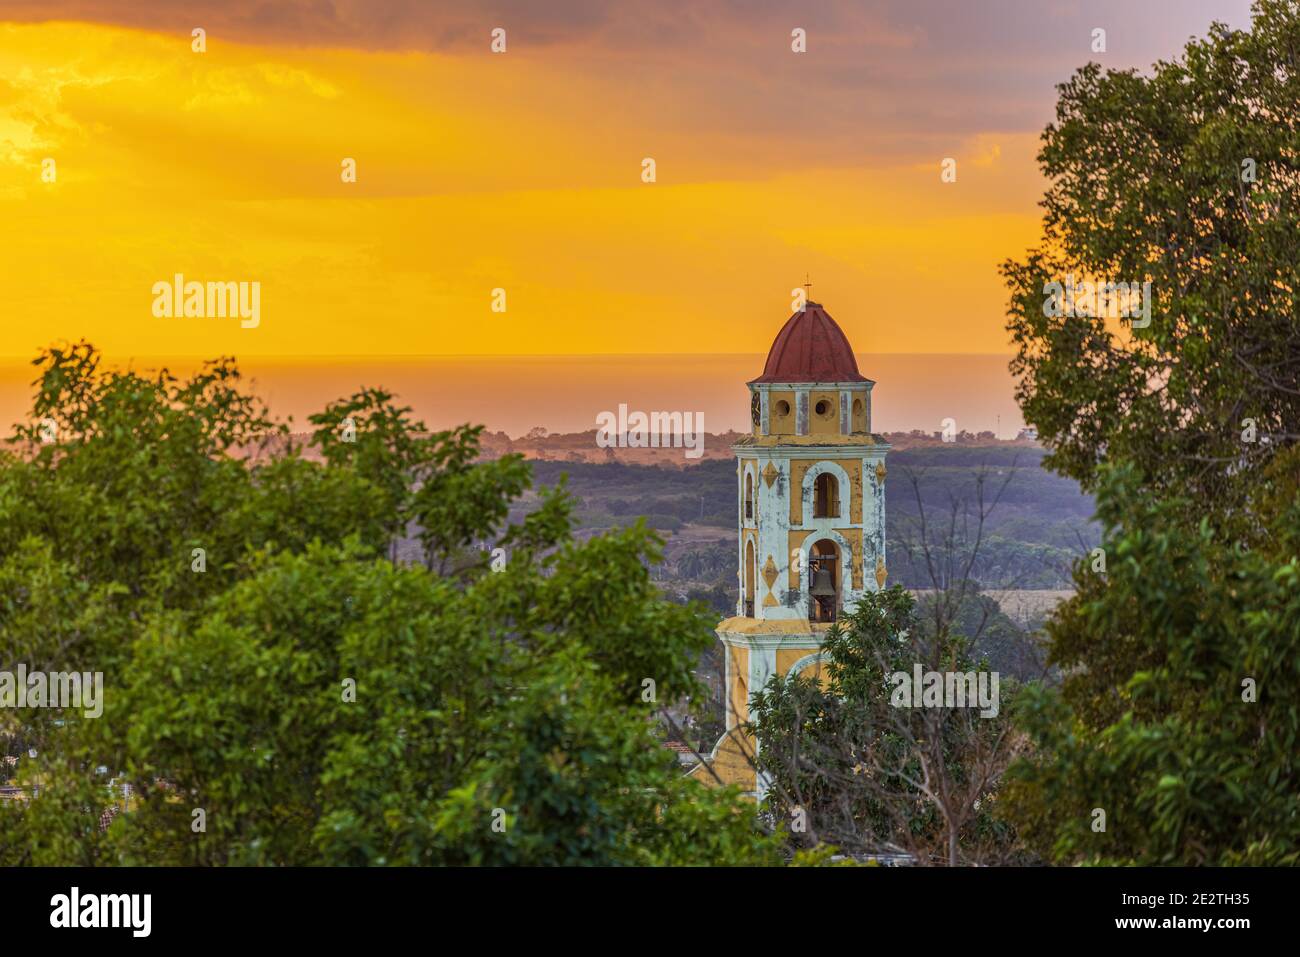 Sonnenuntergang hinter der Skyline von Trinidad, Kuba Stockfoto